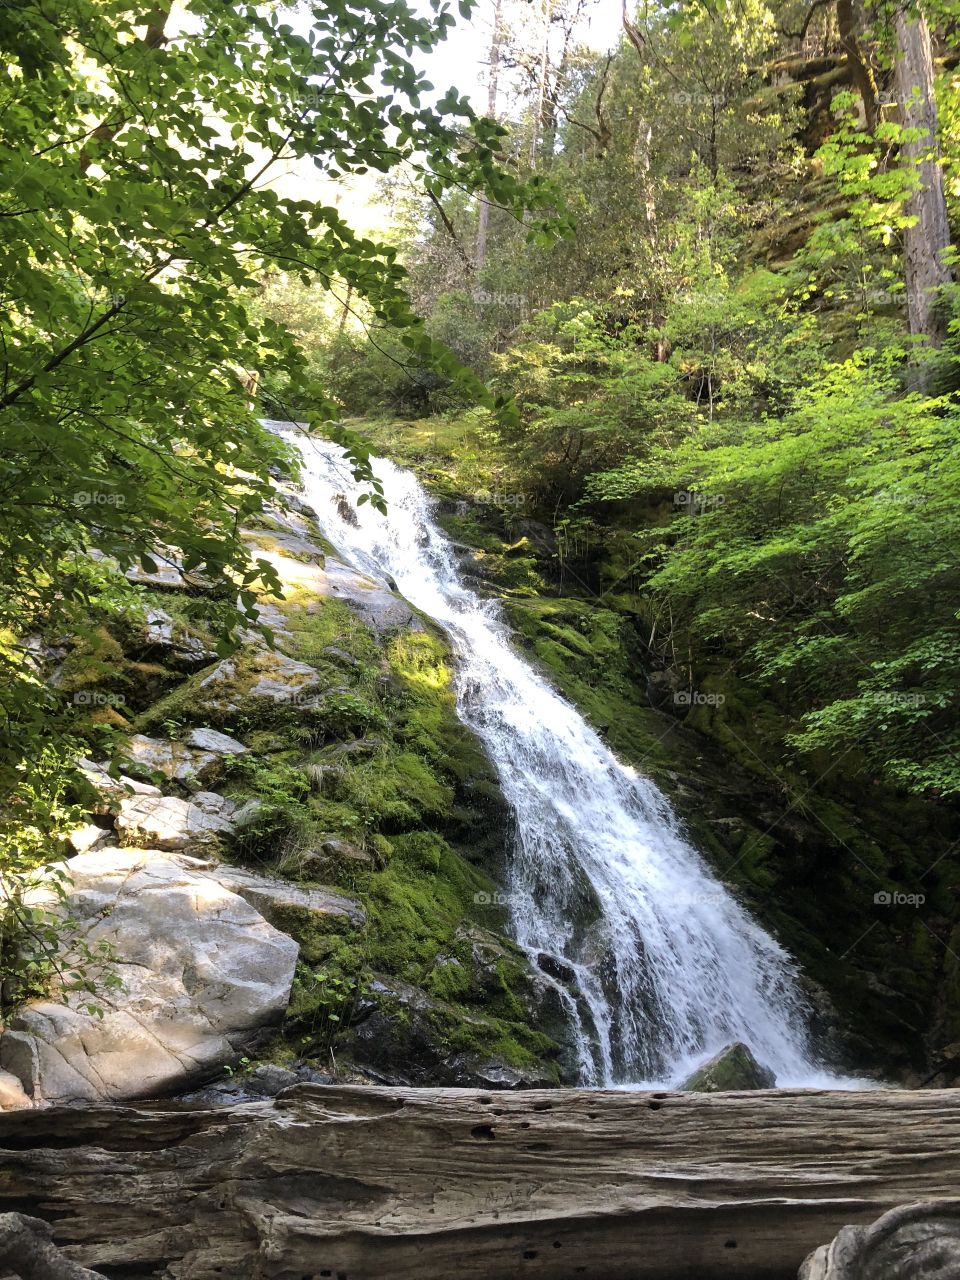 Intense waterfall hidden between lush green forest 